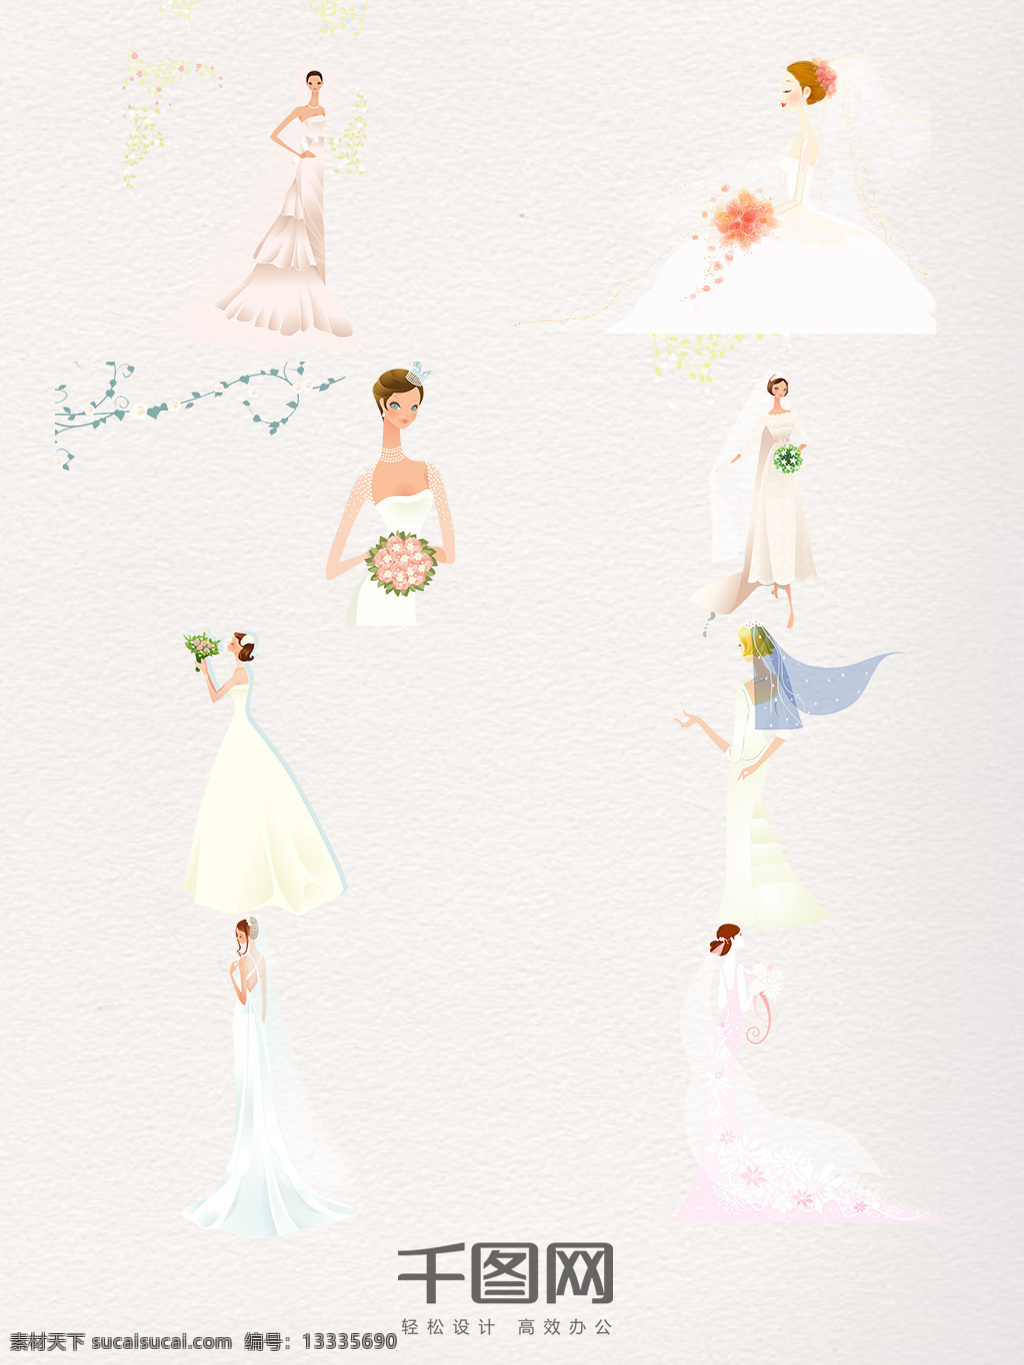 组 美丽 新娘 婚礼 结婚 插画 图 婚纱 唯美 场景 手绘